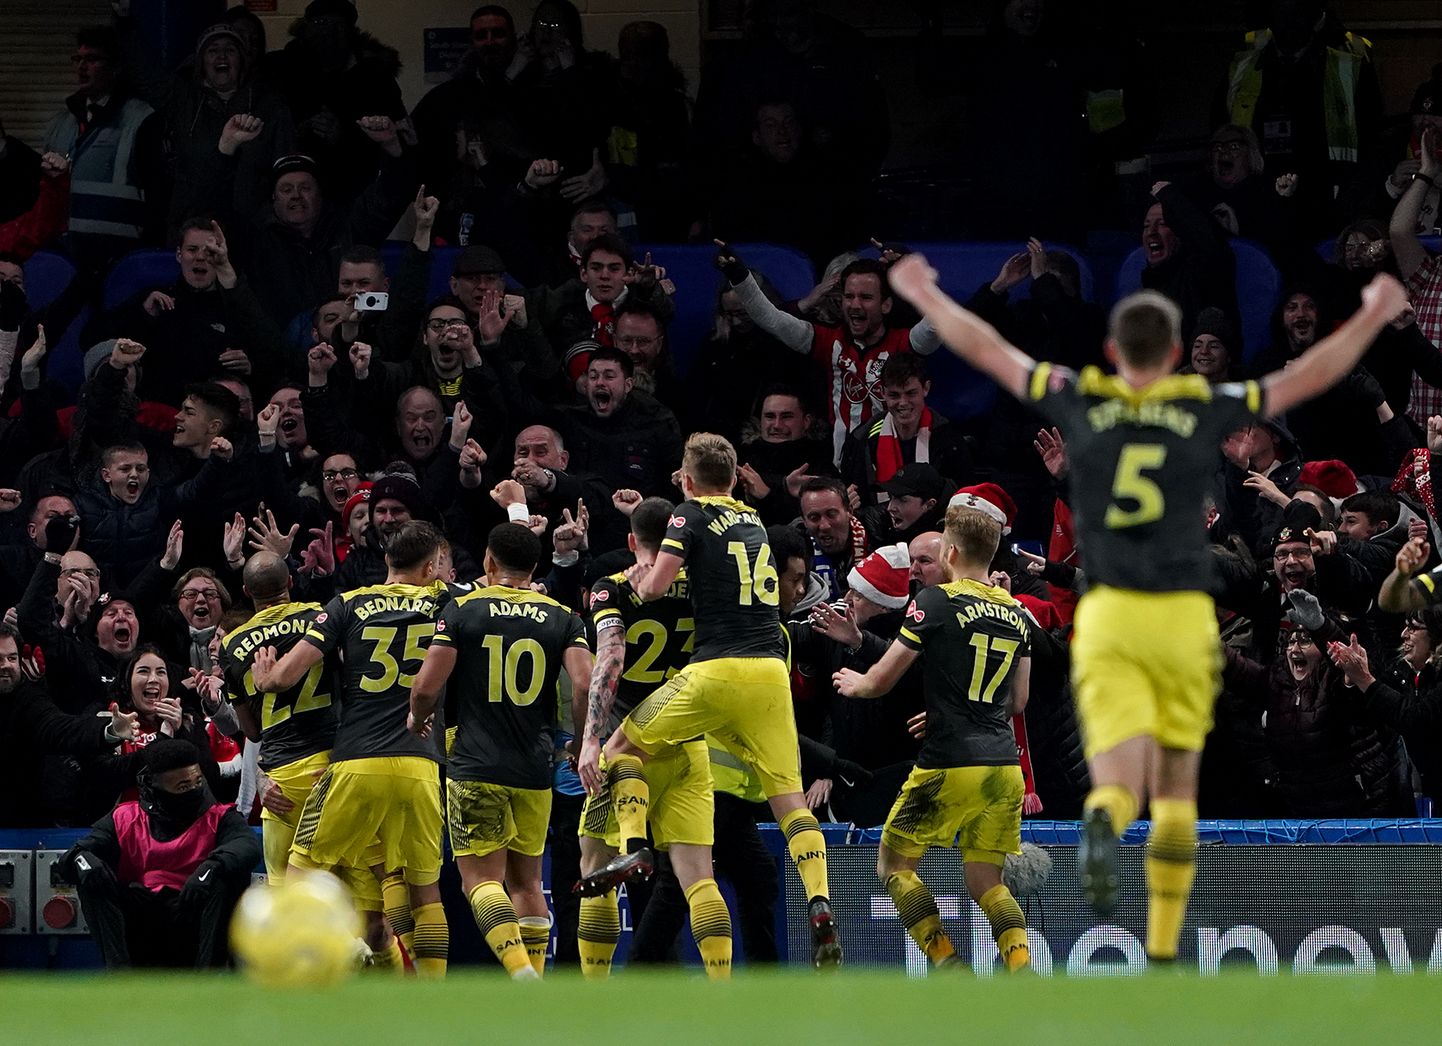 Southamptoni mängijad väravat tähistamas.